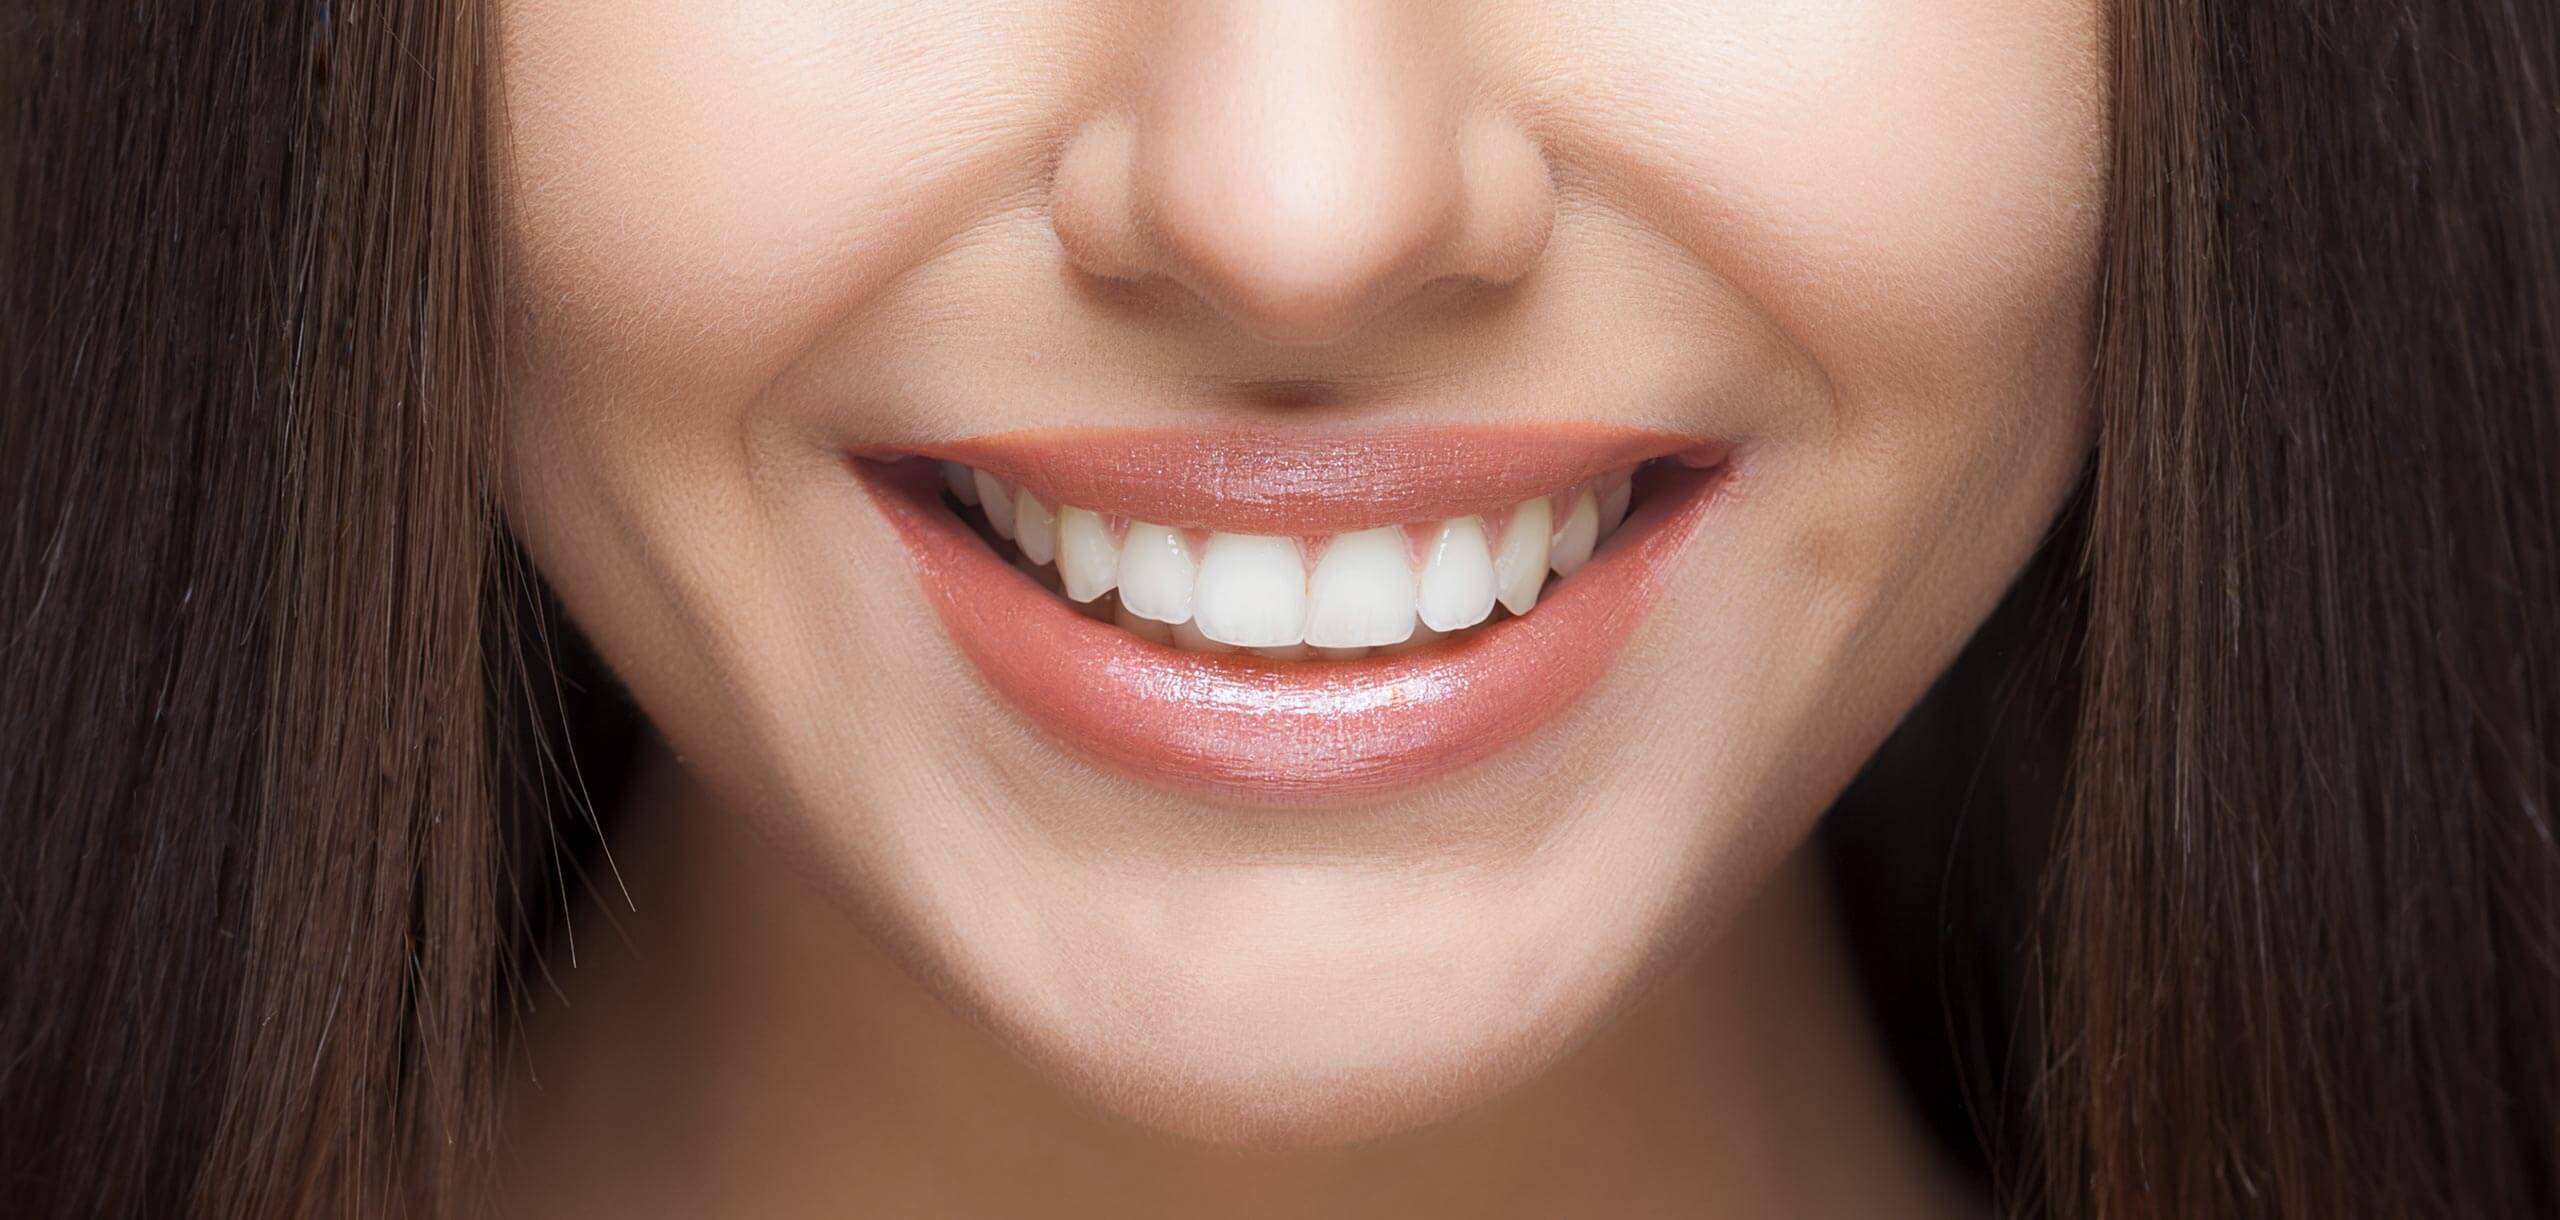 Mikä hammastahna saa hampaasi näyttämään valkoisemmilta?